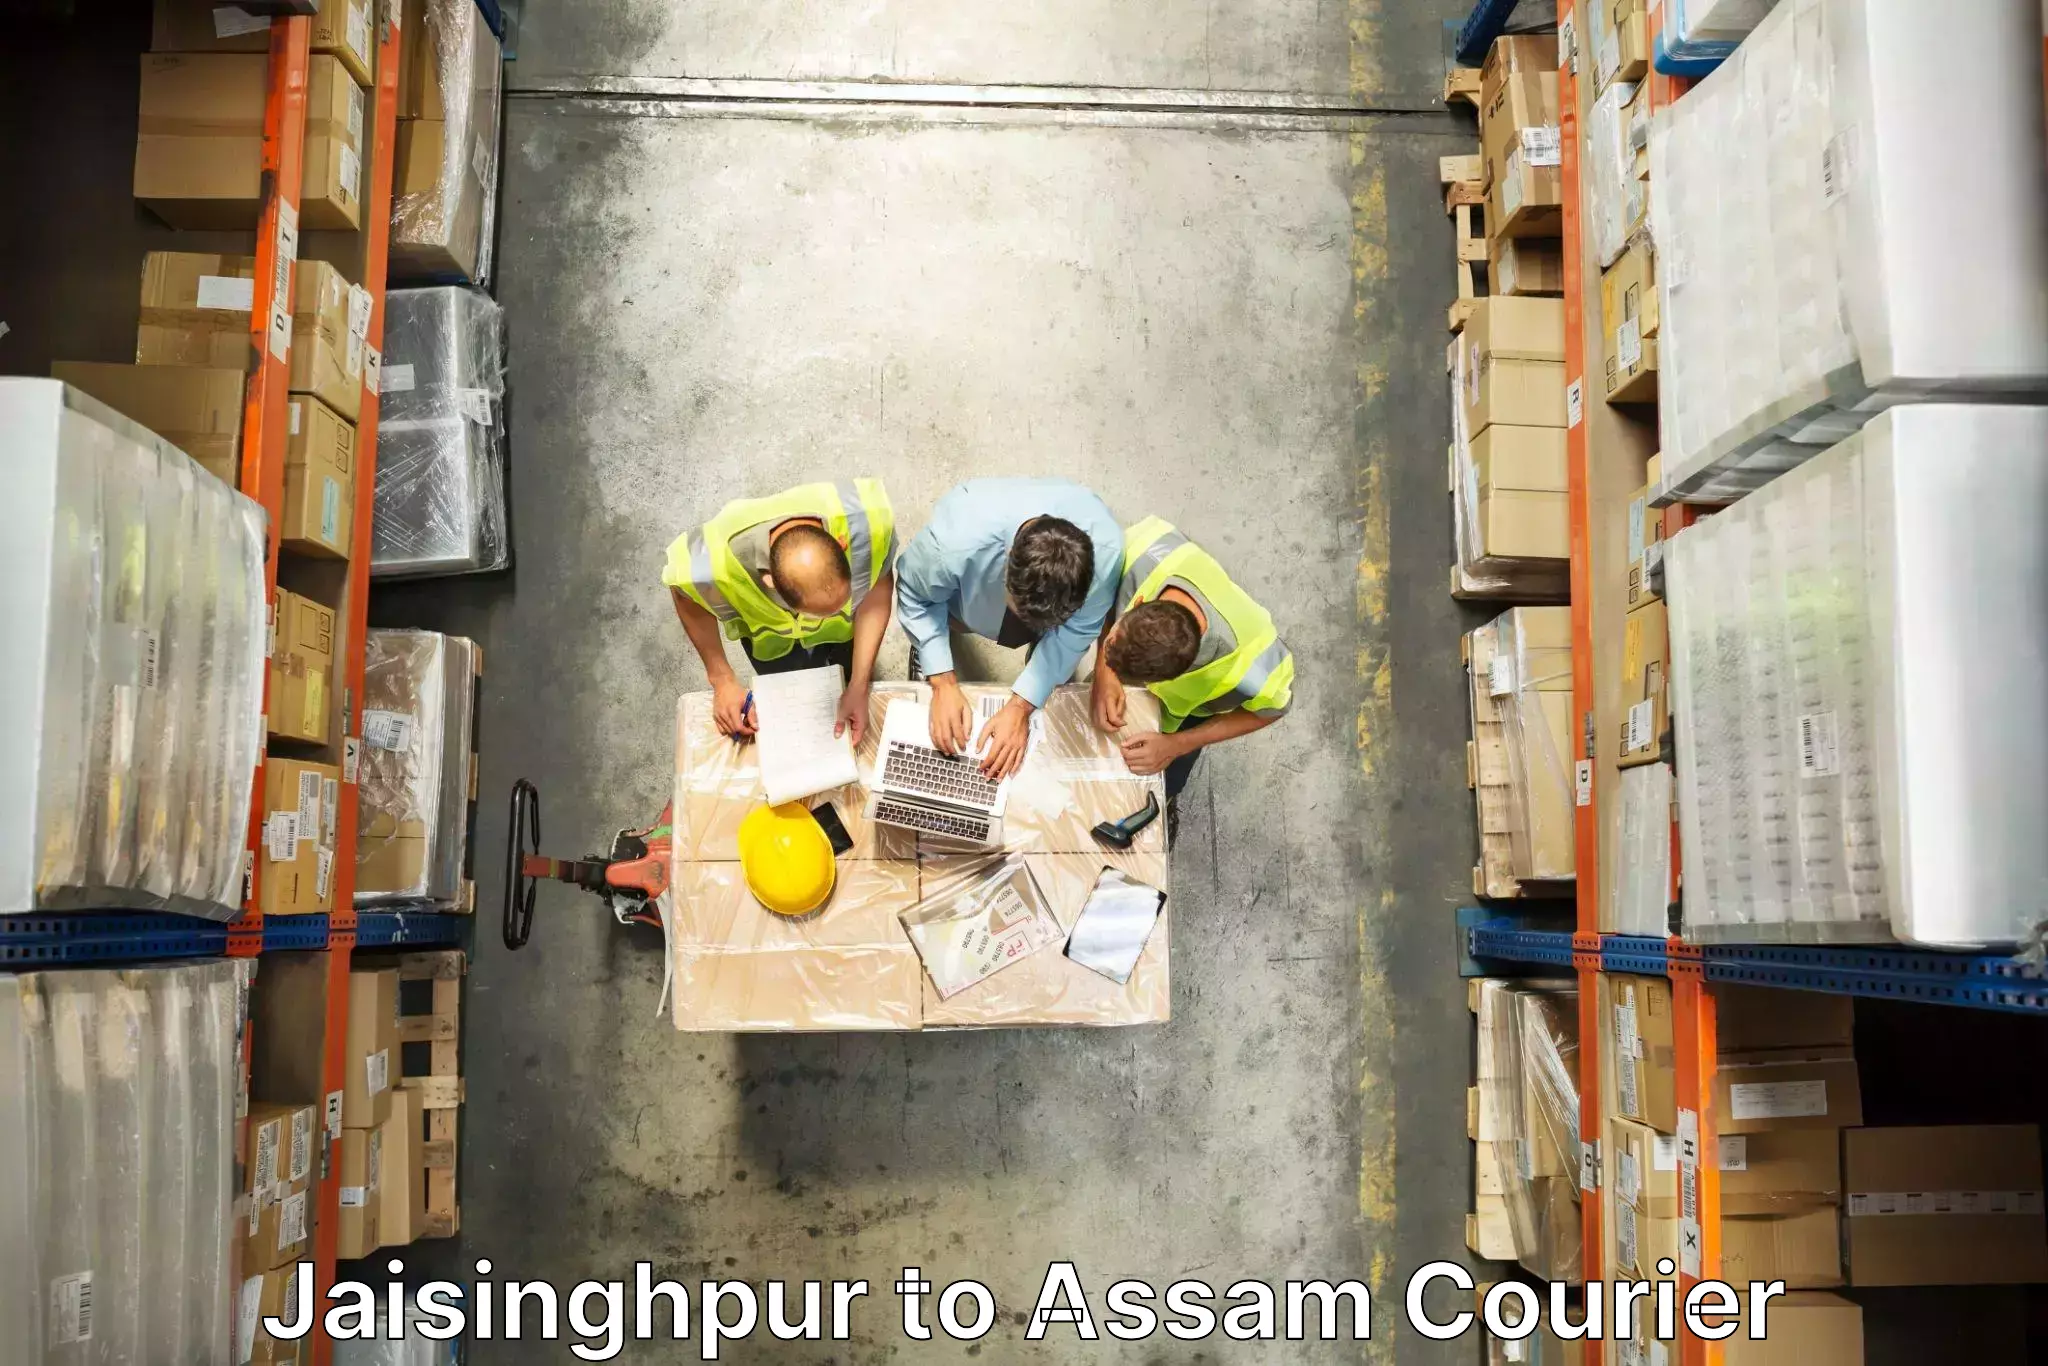 Furniture moving solutions Jaisinghpur to Tezpur University